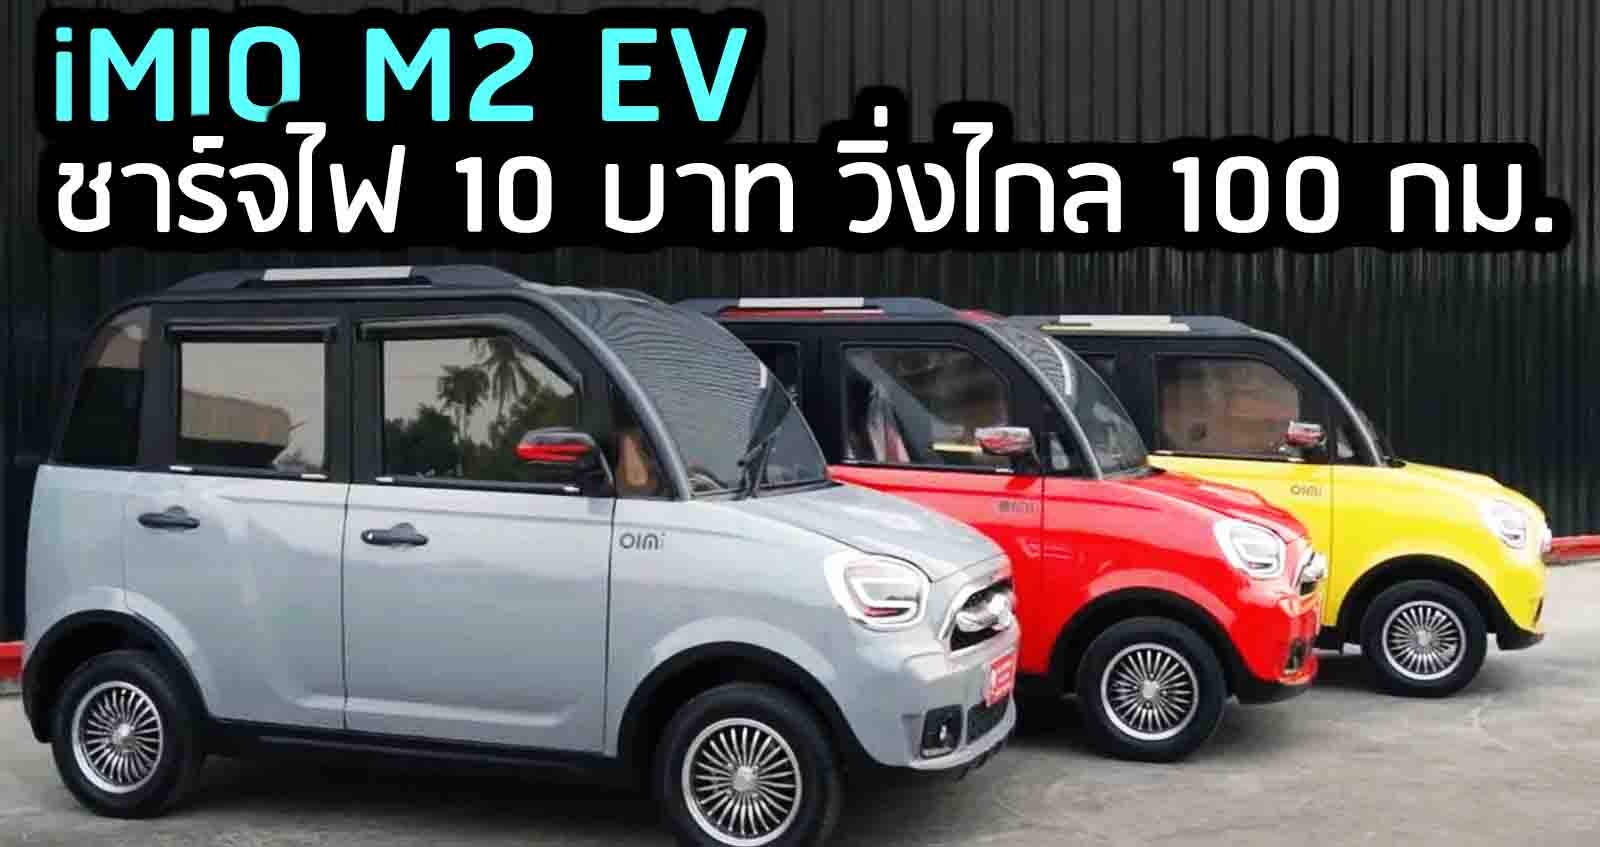 iMIO M2 EV ชาร์จไฟ 10 บาท วิ่งไกล 100 กม. ราคา 279,000 บาท ในไทย